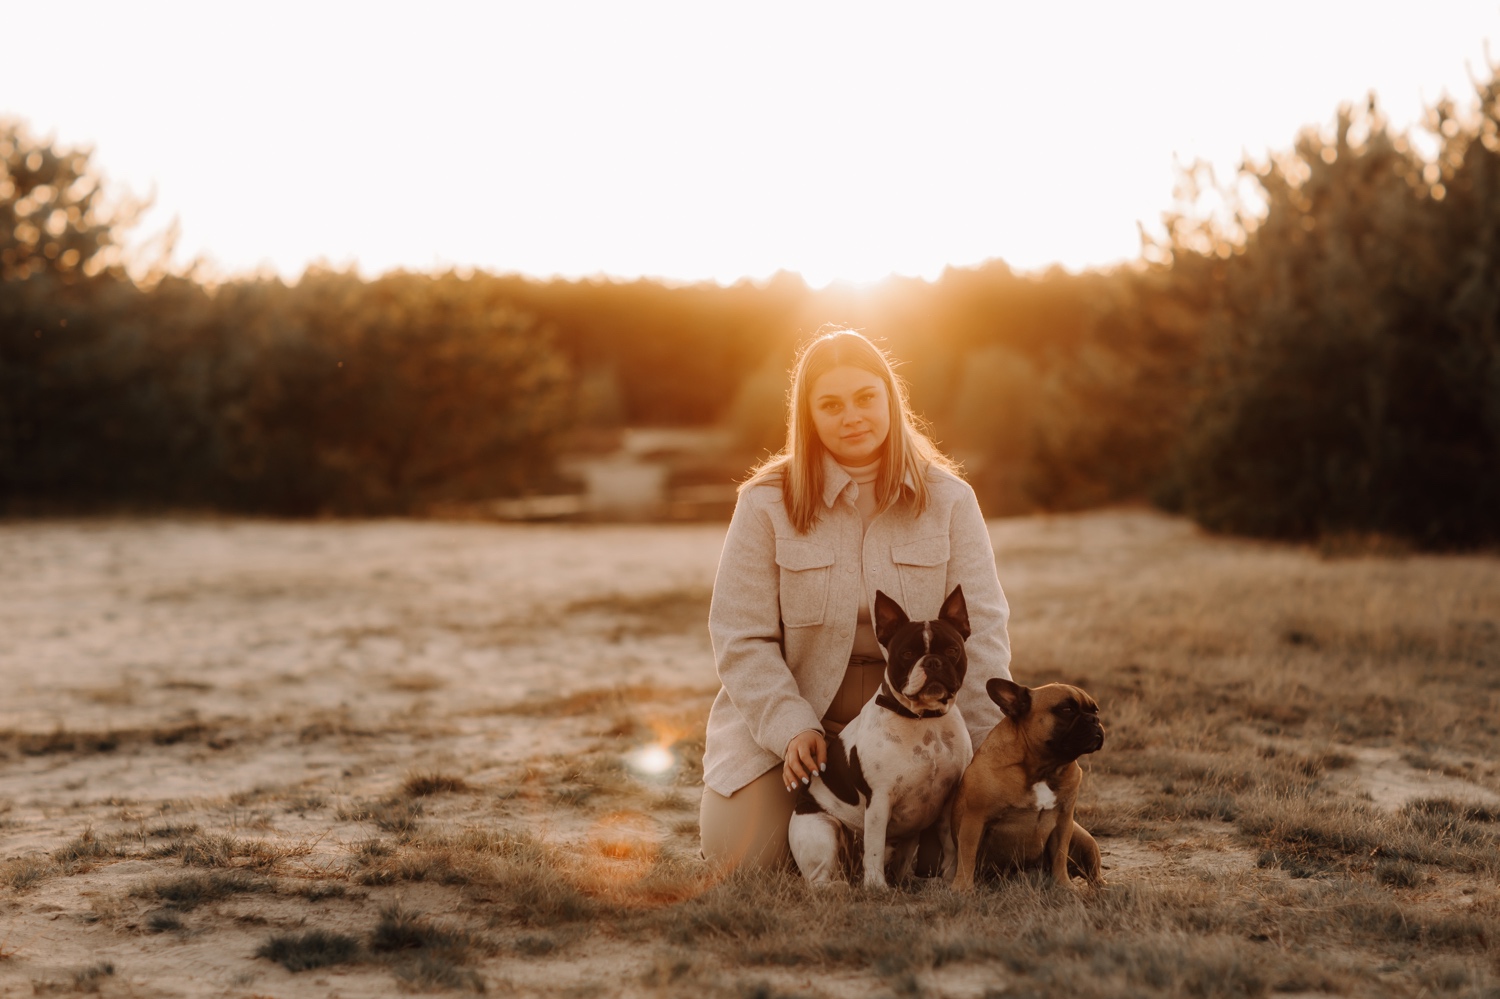 businessfotograaf limburg - Nederlandse fotografe poseert met haar hondjes in de Lommelse sahara bij zonsondergang